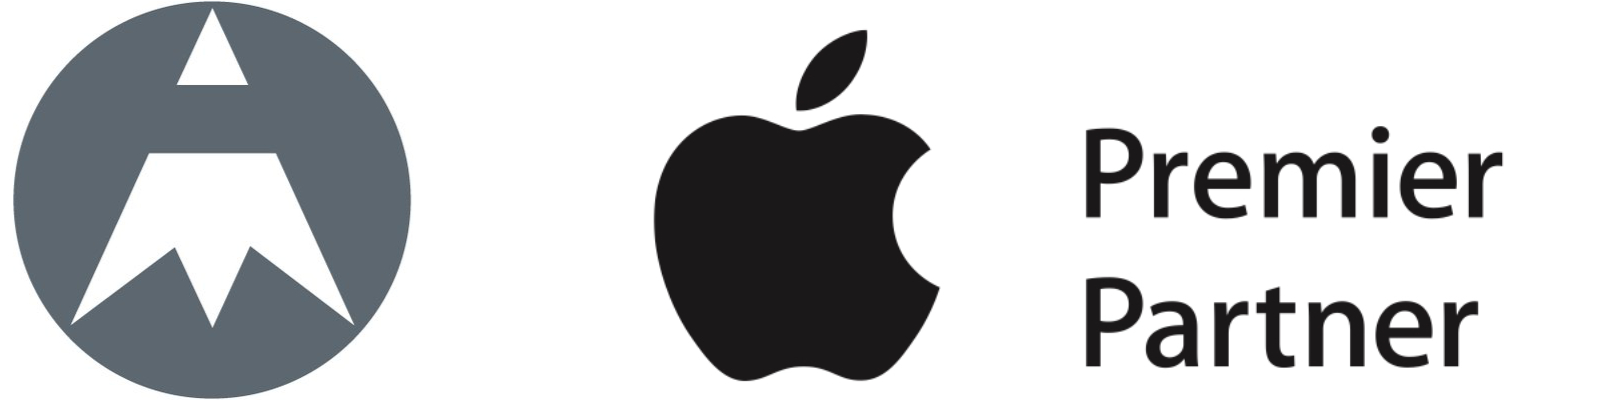 Graphite Apple Premier Partner